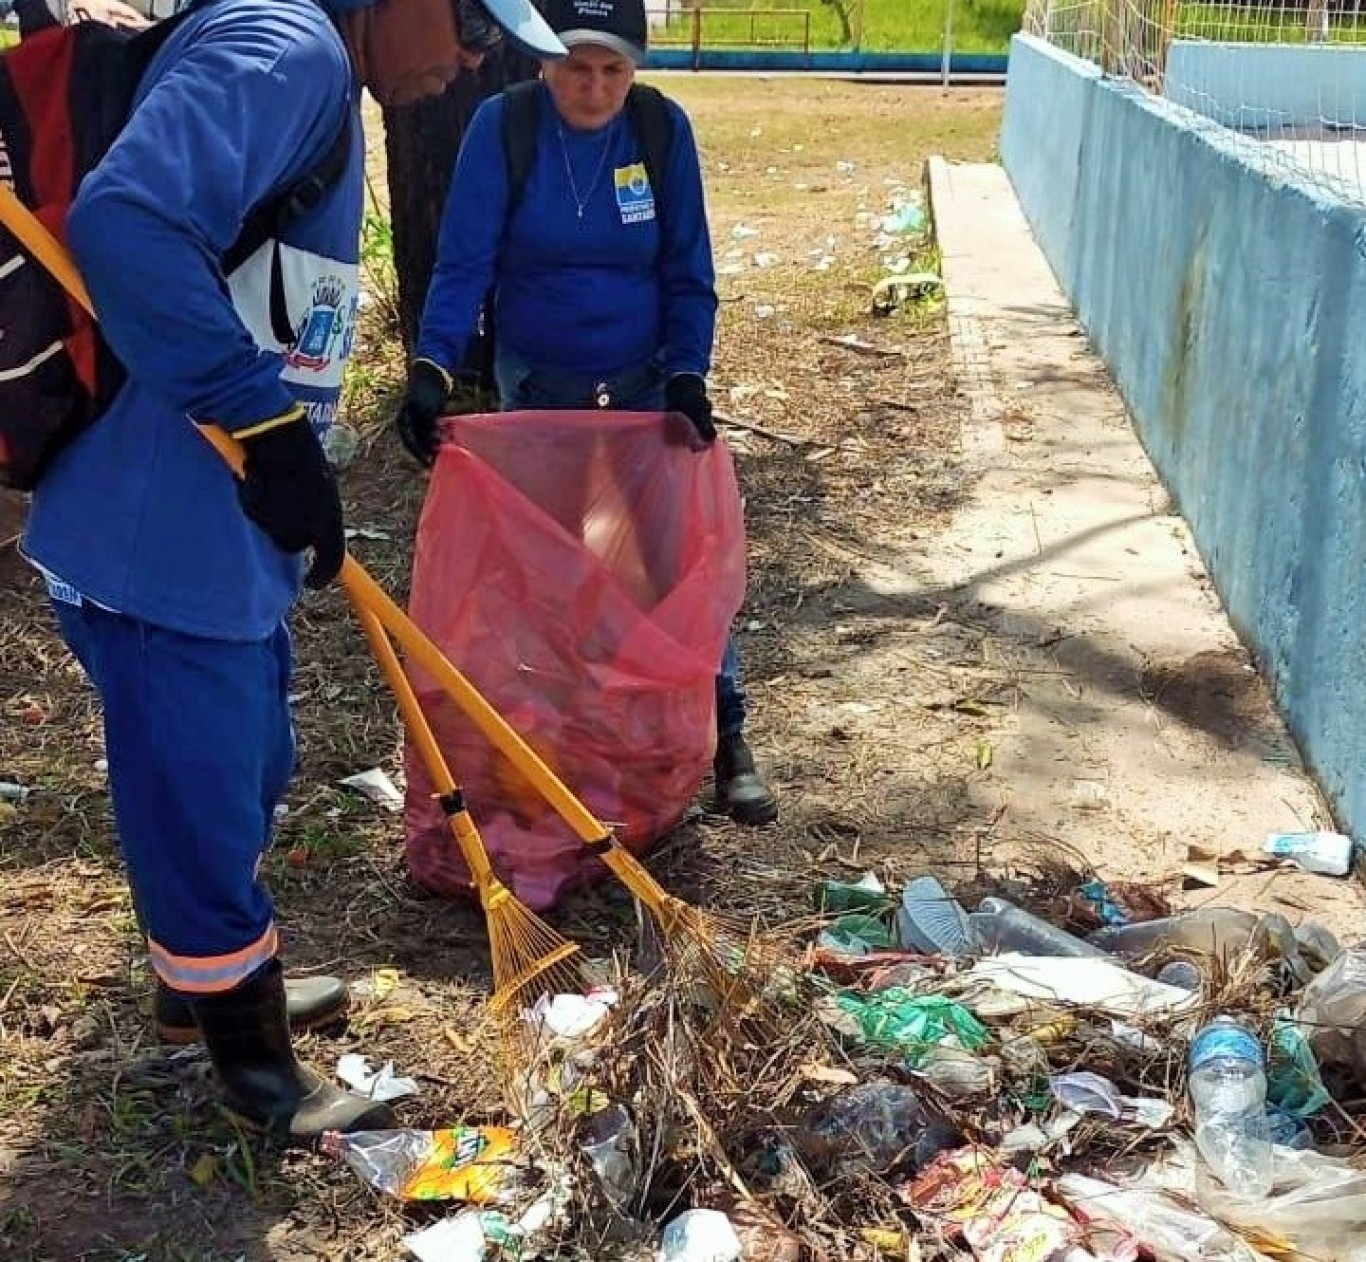 Semana inicia com serviços de limpeza pública no Parque da Cidade